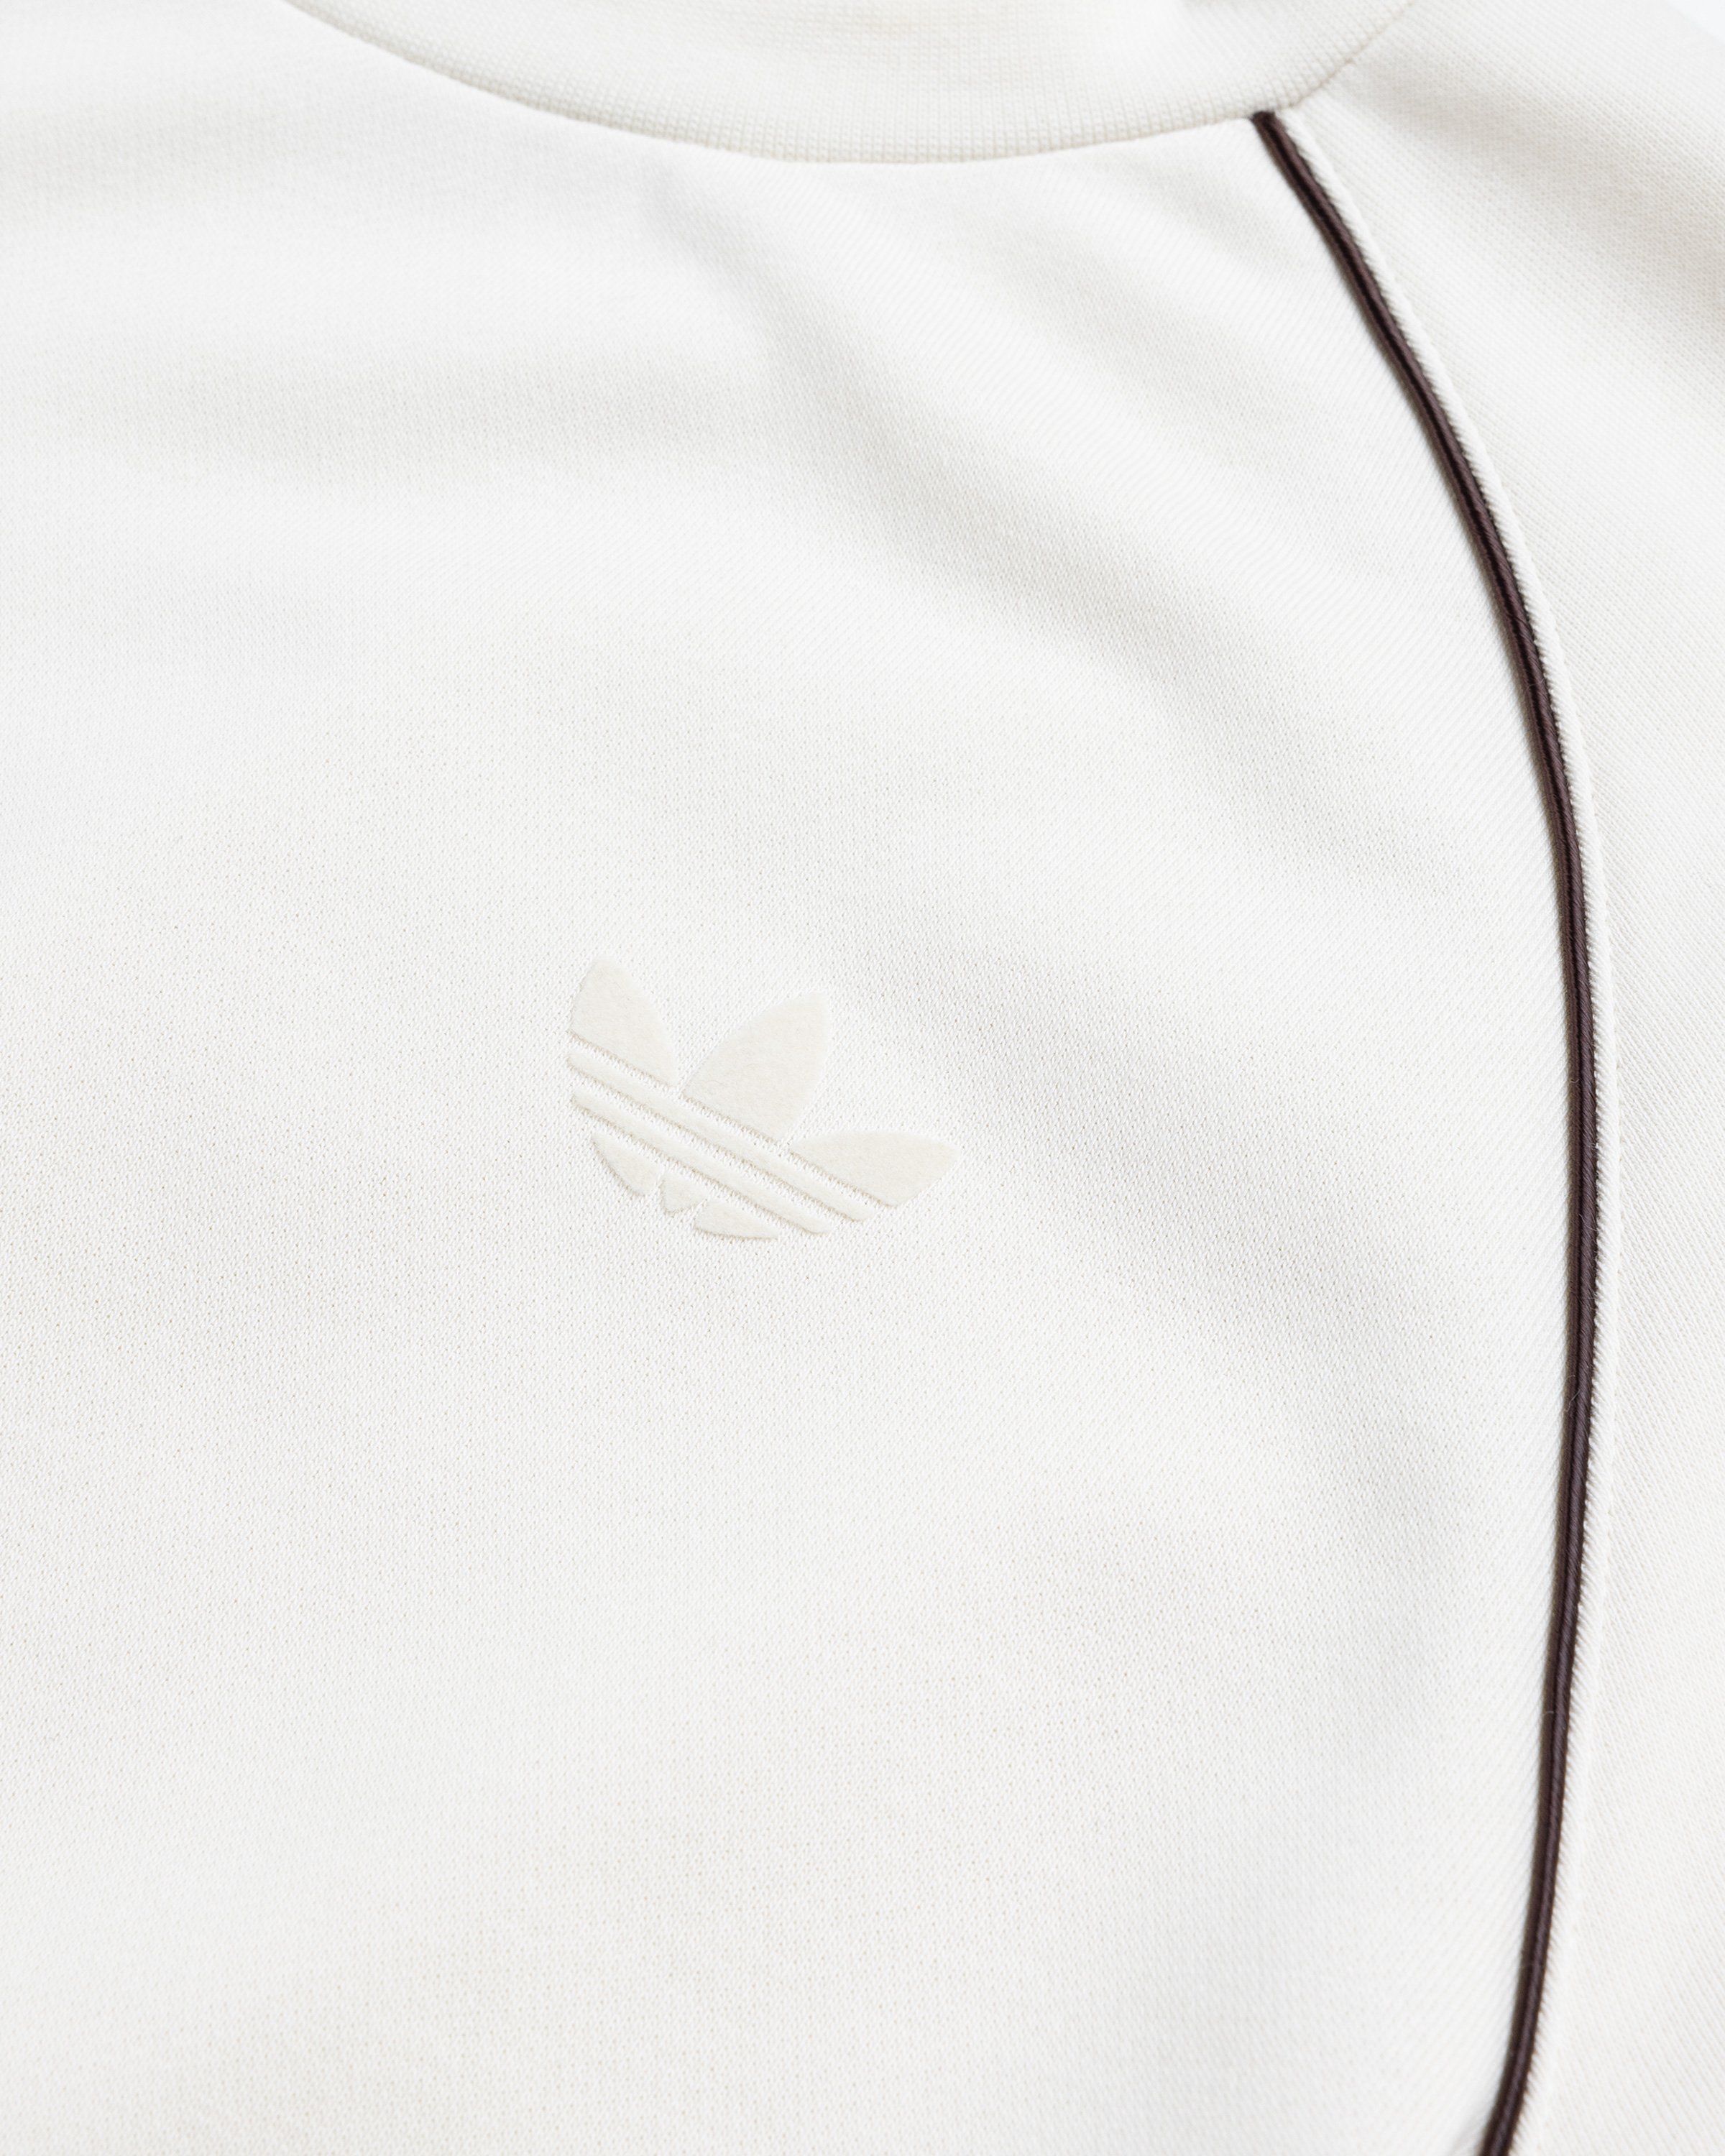 Adidas x Wales Bonner - Crewneck Sweater Wonder White - Clothing - Beige - Image 5